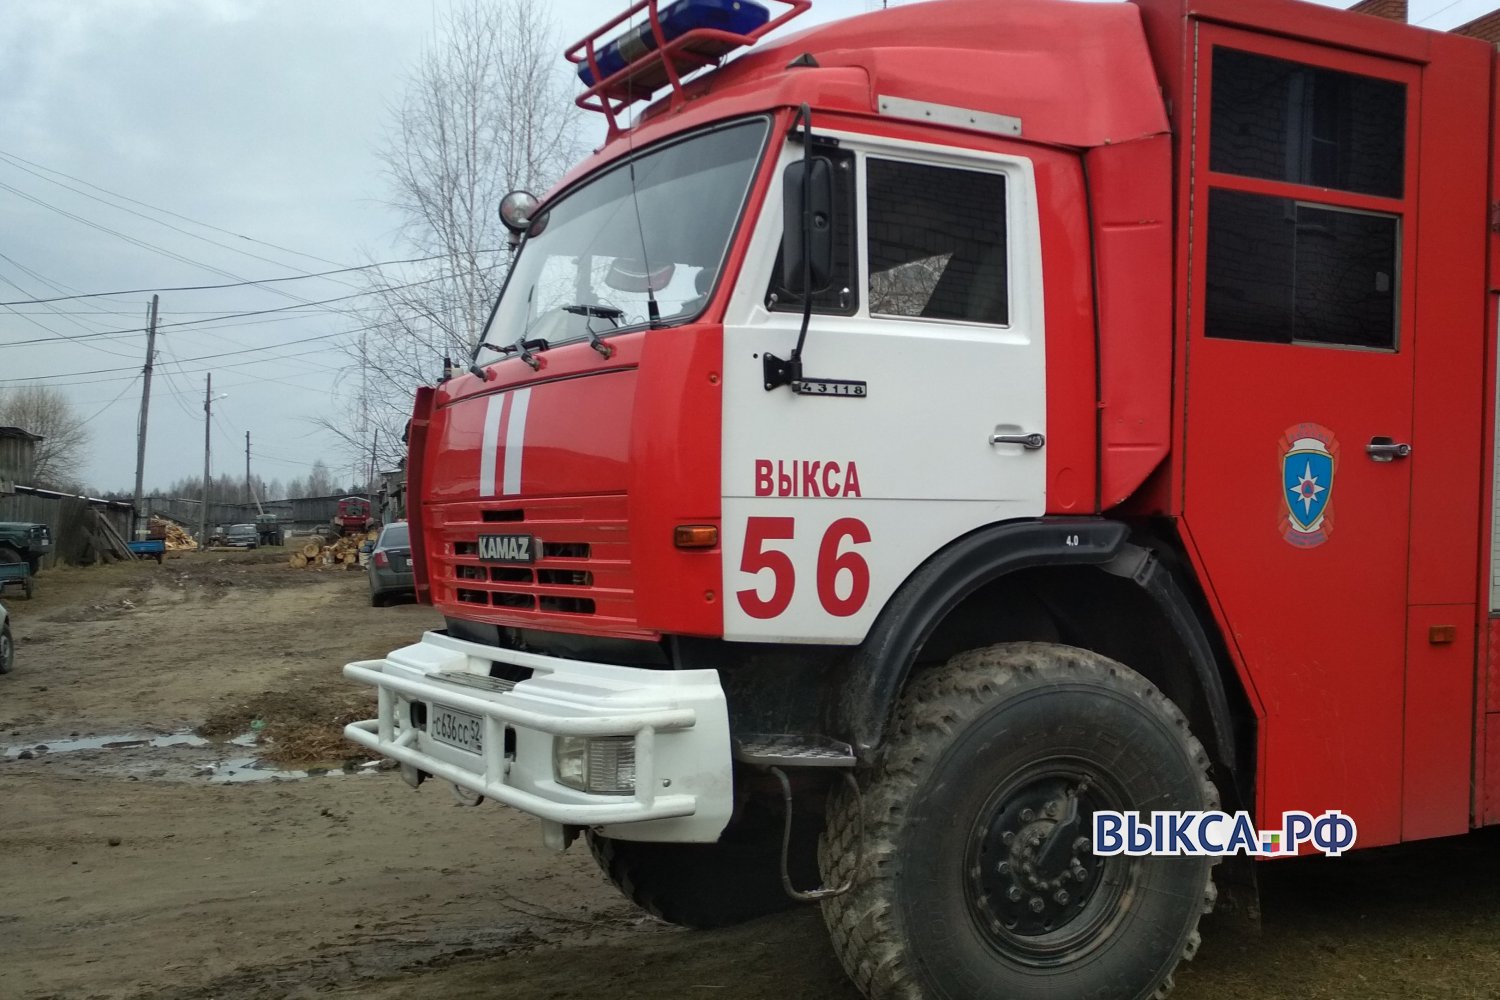 Неправильно установленная колонка привела к пожару в Борковке